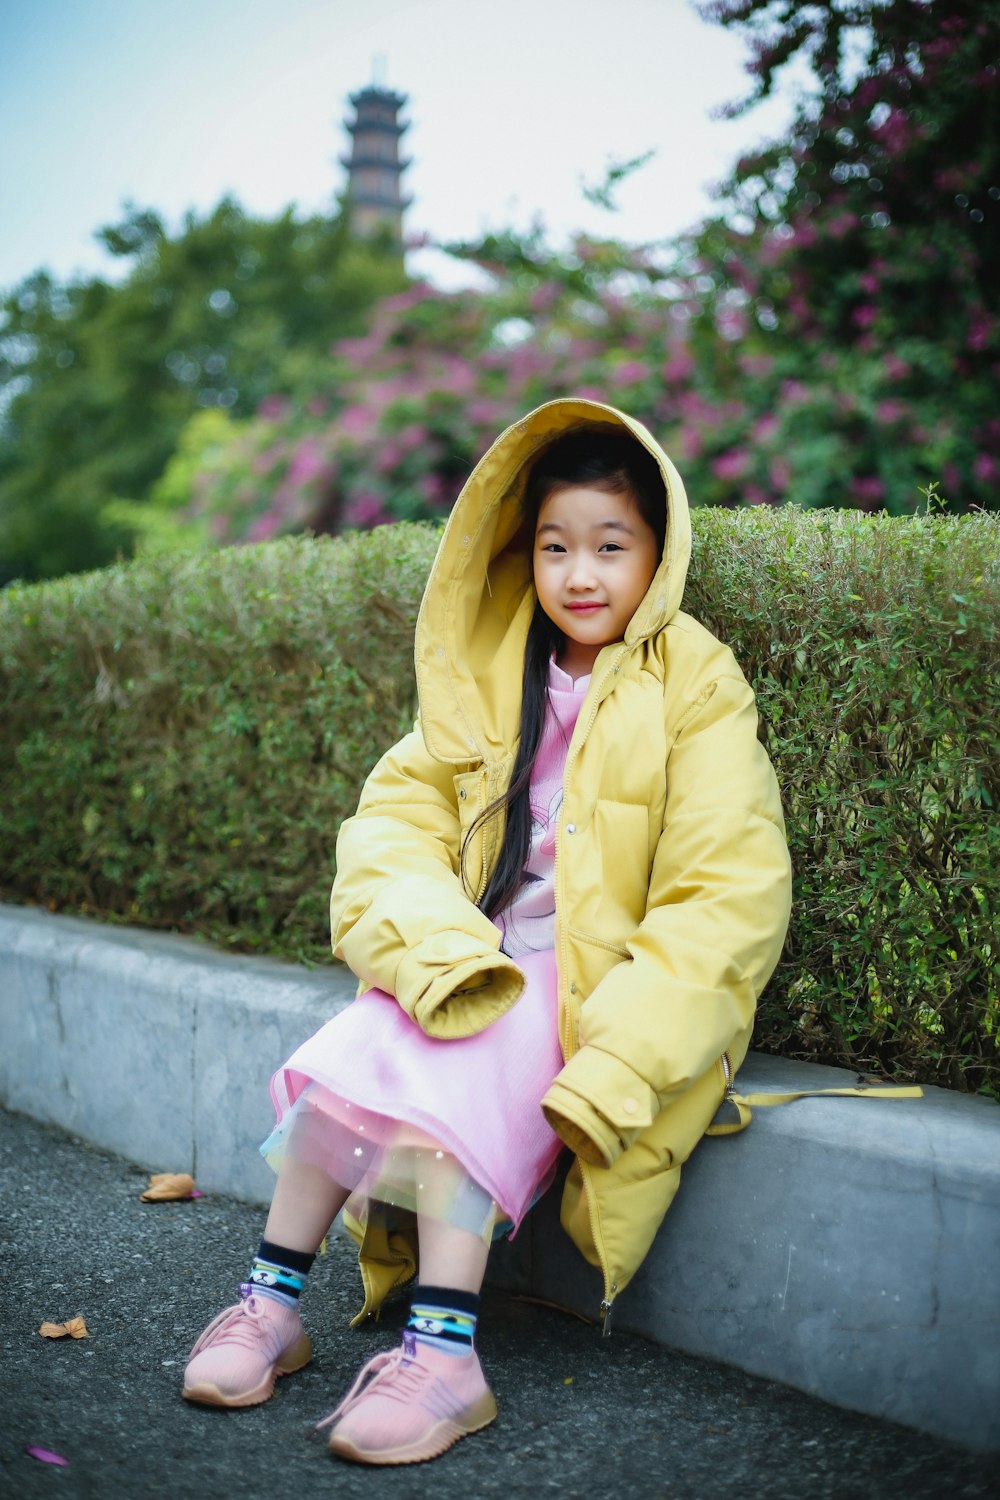 De Verdad tráfico Por nombre Foto Una niña con un abrigo amarillo sentada en una acera – Imagen Vestir  gratis en Unsplash